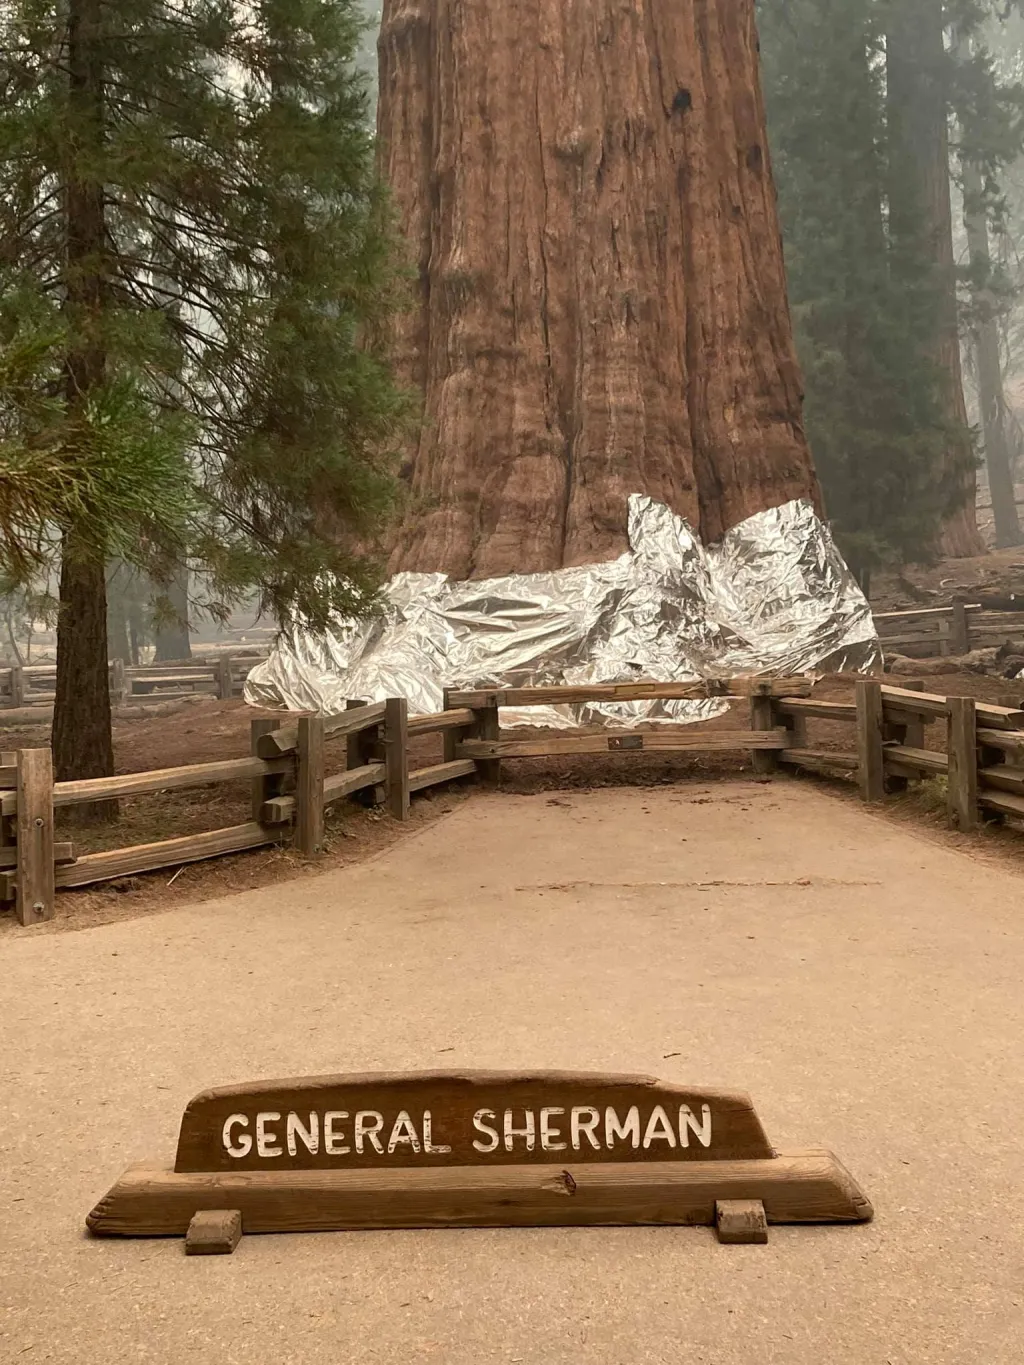 Hasiči zasahovali v americkém Národním parku Sequoia. V ohrožení jsou stromy staré přes dva tisíce let. Mezi nimi se nachází i největší sekvojovec obrovský na světě, nazvaný Strom generála Shermana. Vzácné stromy hasiči obalili do speciální fólie